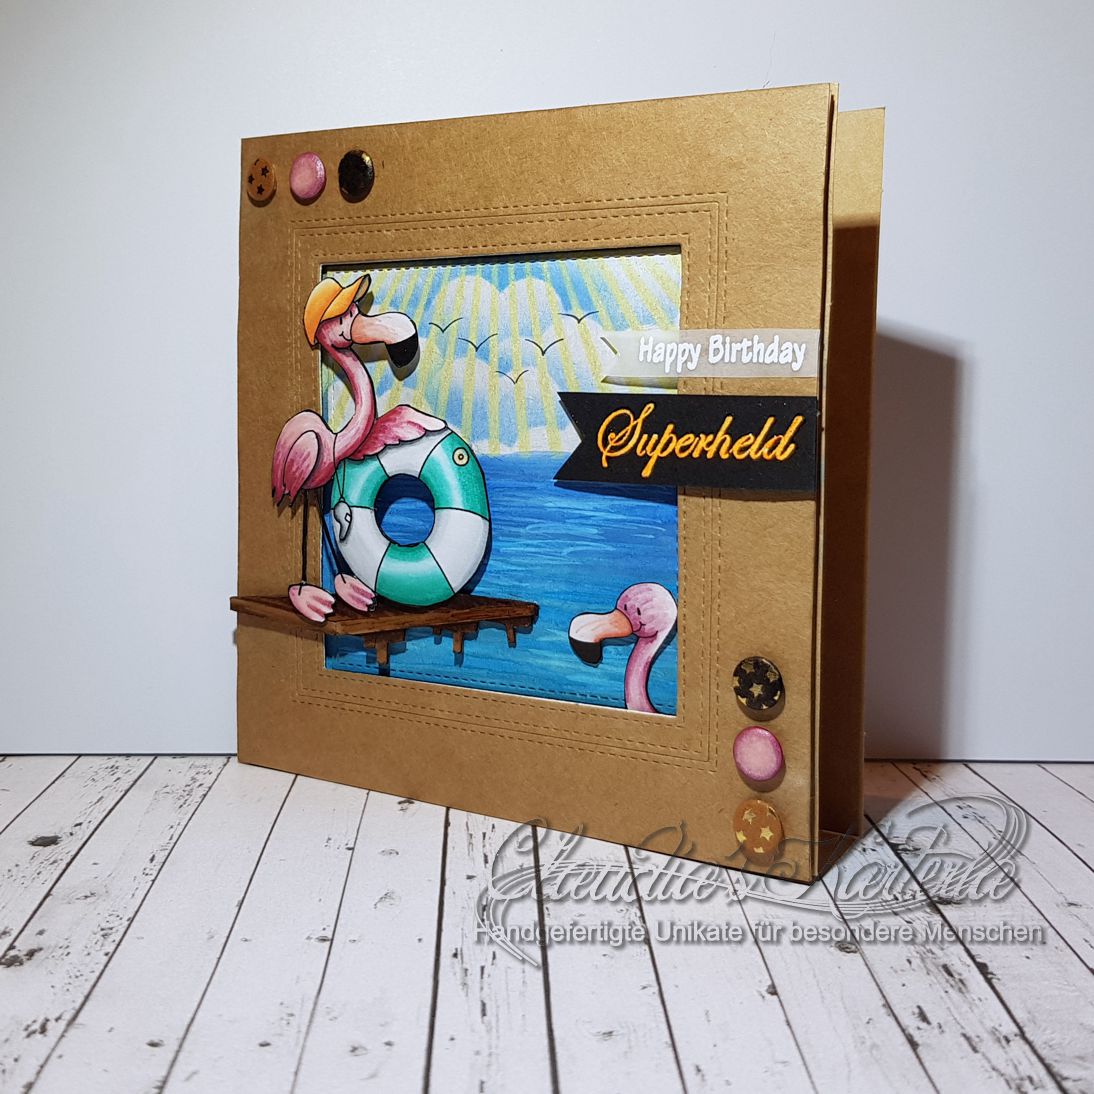 Flamingo-Rettungsschwimmer Superheld | Geburtstagskarte